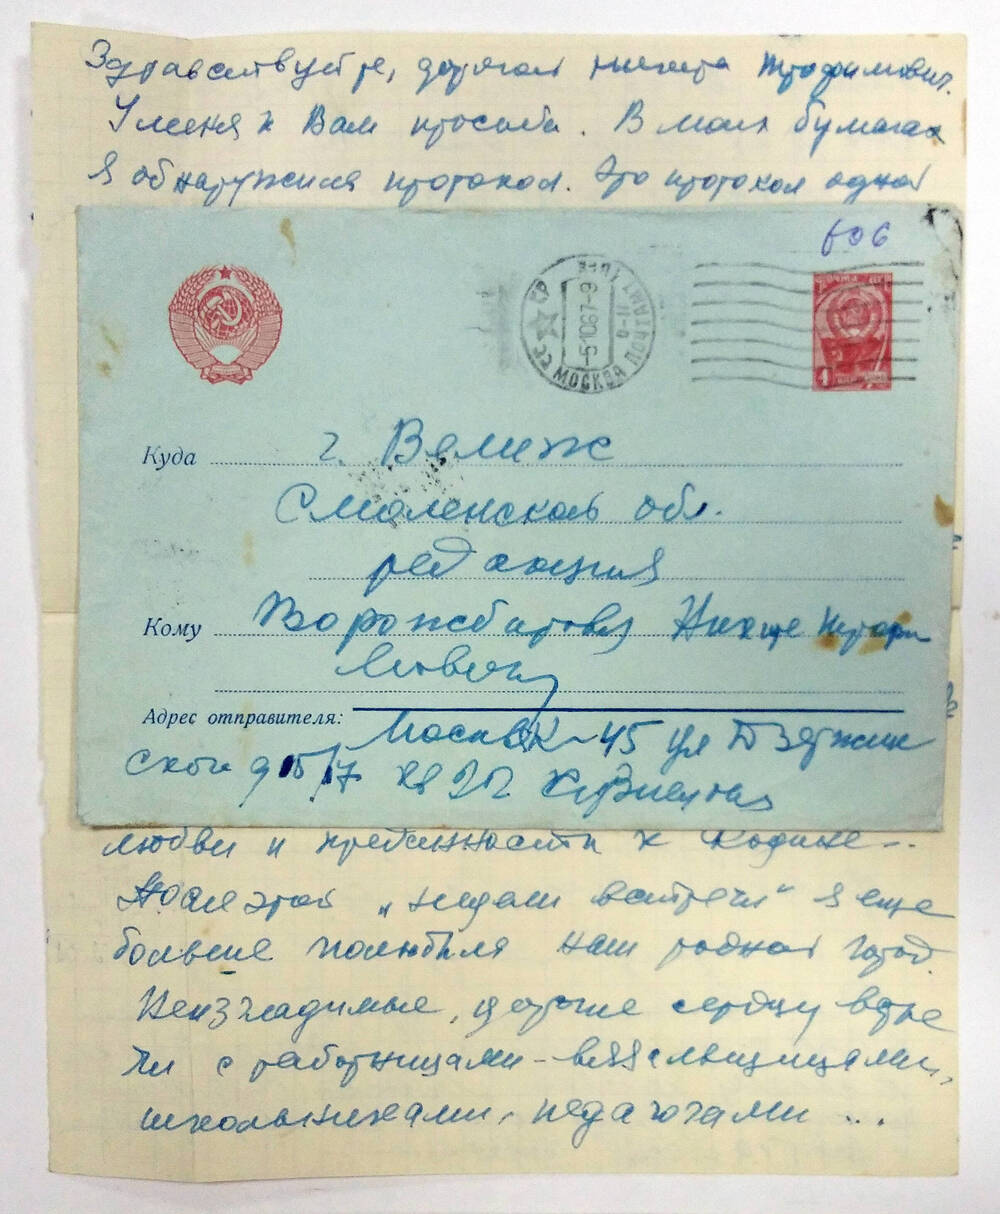 Письмо Никите Трофимовичу Ворожбитову от Кузнецовой Фиры 1967 г.